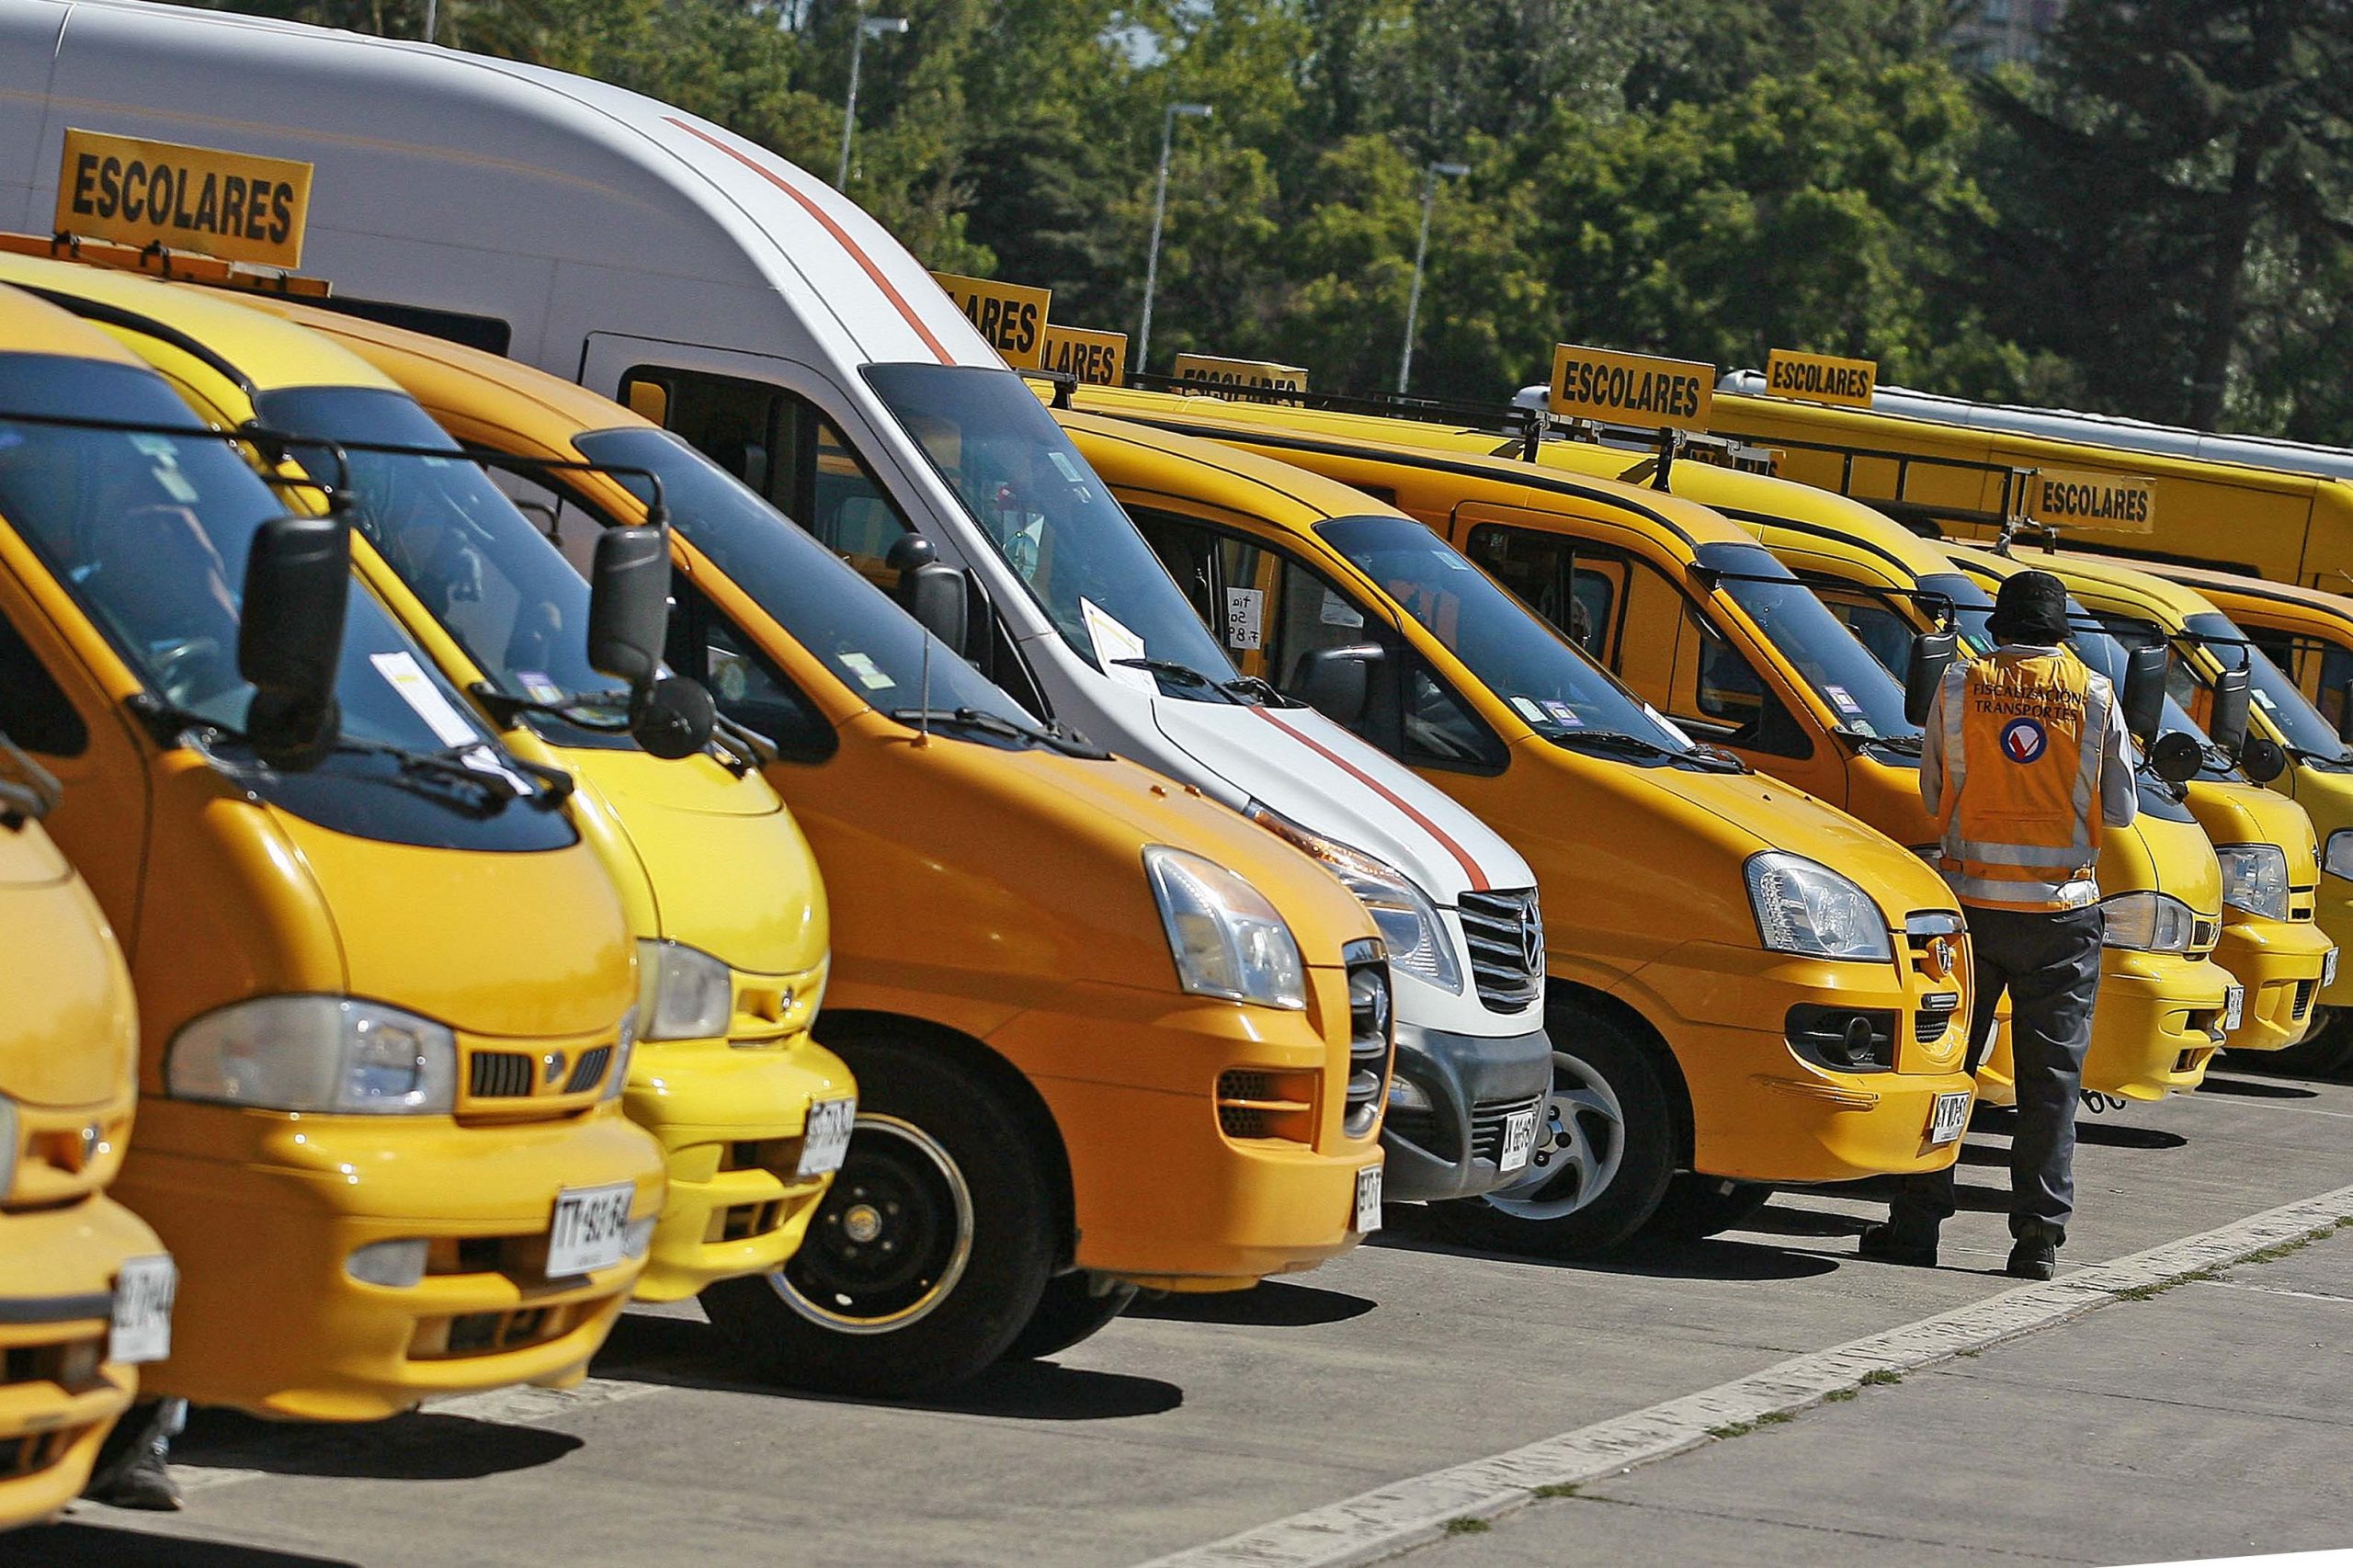 V región: Autoridades fiscalizarán furgones escolares y llaman a confiar en transportes inscritos